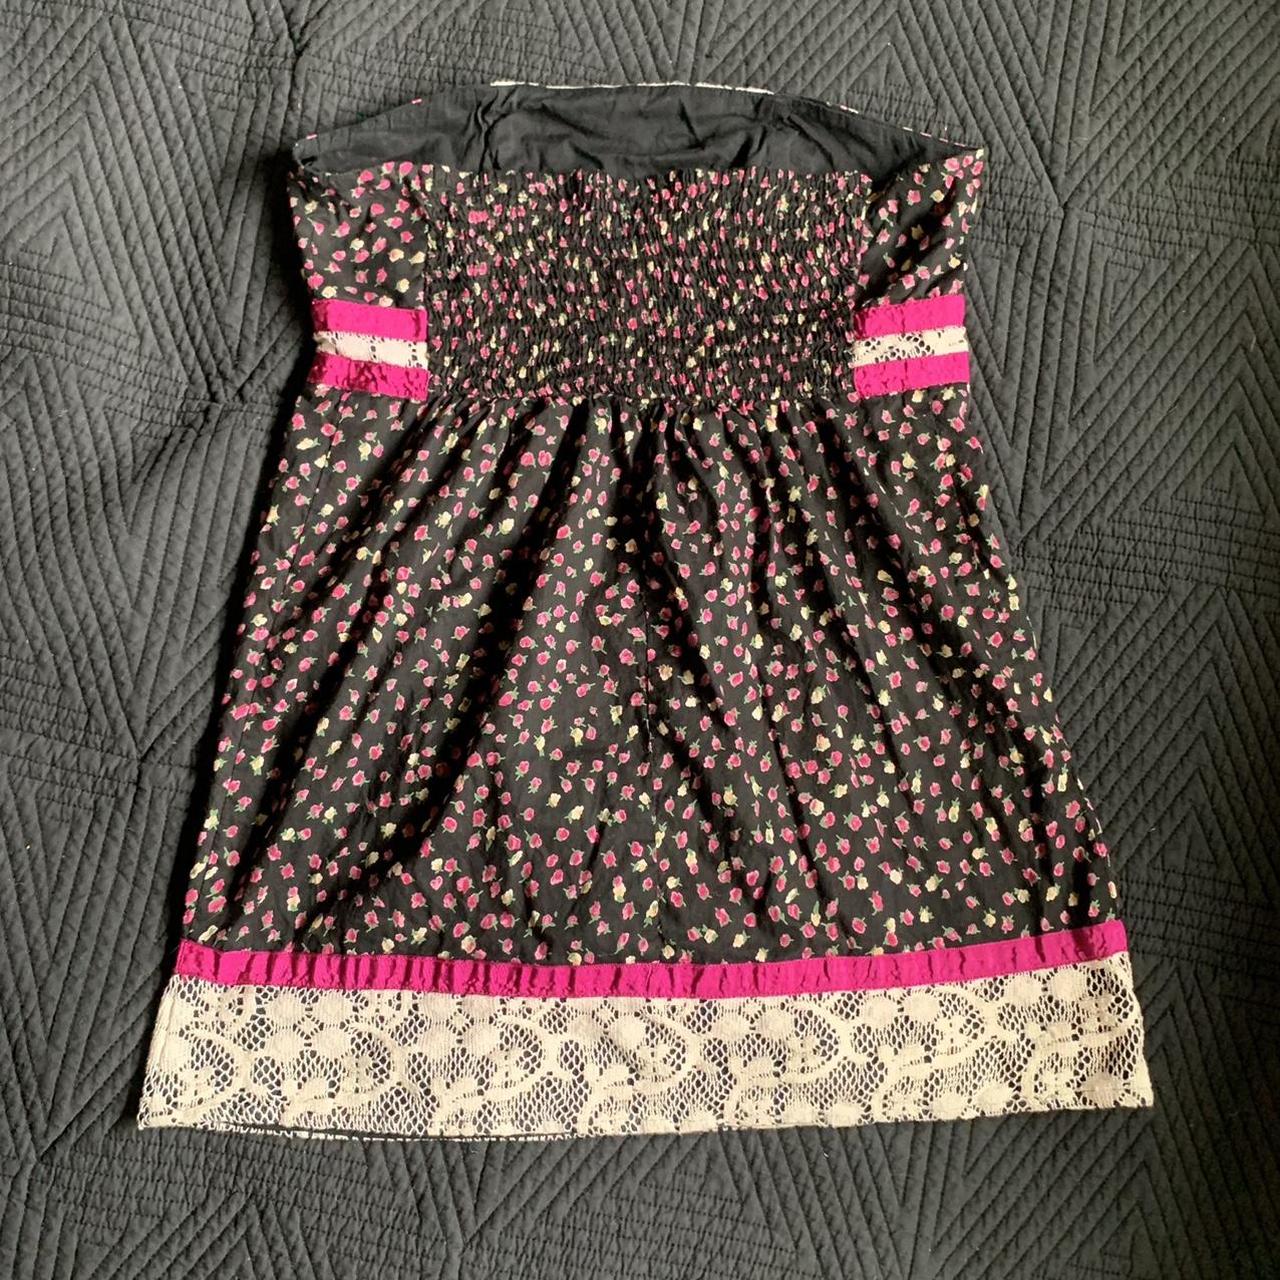 Dizzy Lizzy Women's Black and Pink Dress (3)